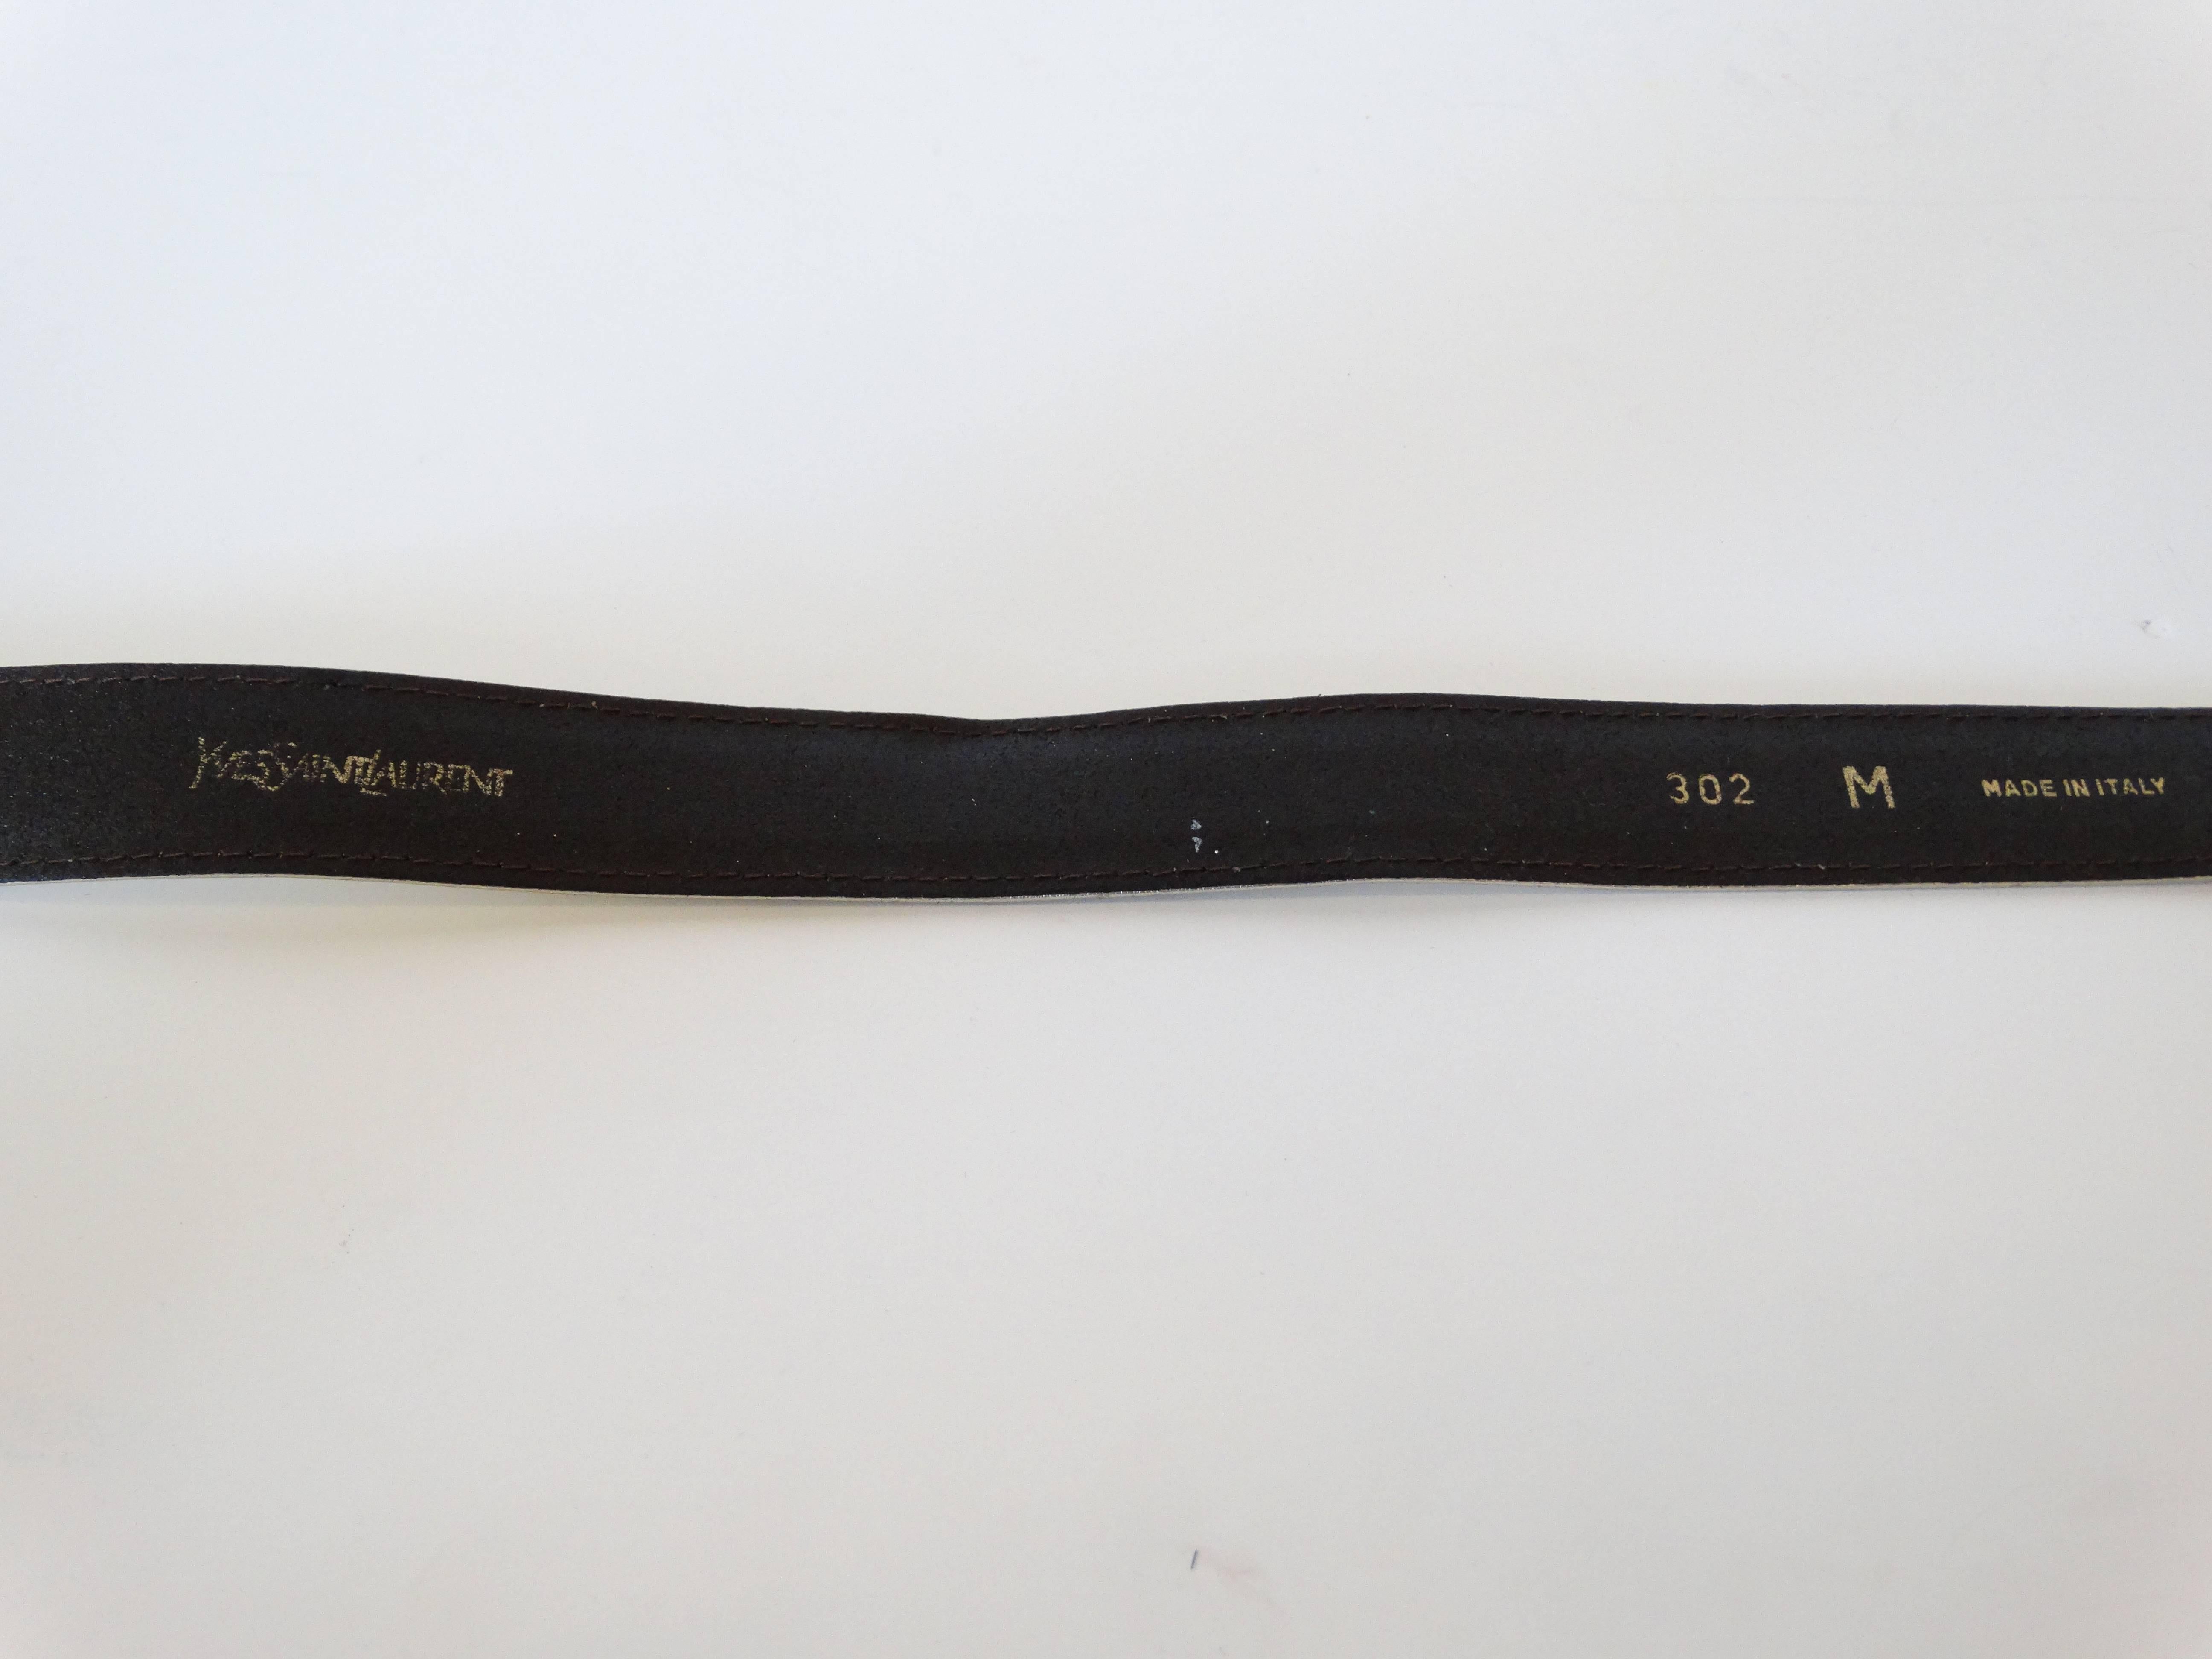 Rehaussez votre tenue avec cette ceinture Yves Saint Laurent des années 1980 ! Ceinture en cuir métallisé or avec boucle de ceinture martelée or. 

Marqué une taille moyenne.
Mesure 34 pouces au total.